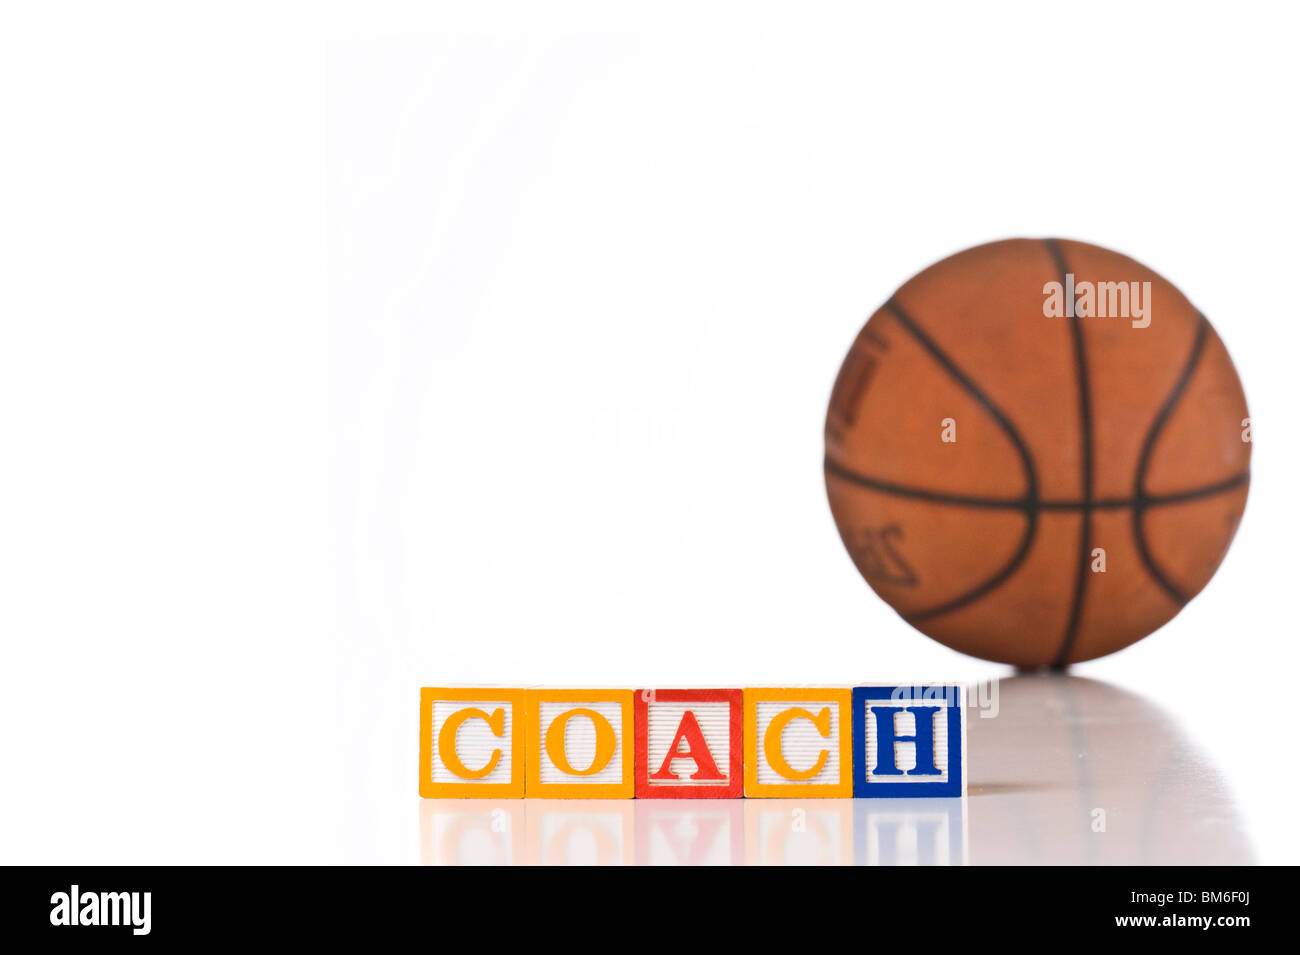 Colorata per bambini ortografia blocchi pullman con una palla da basket in background Foto Stock